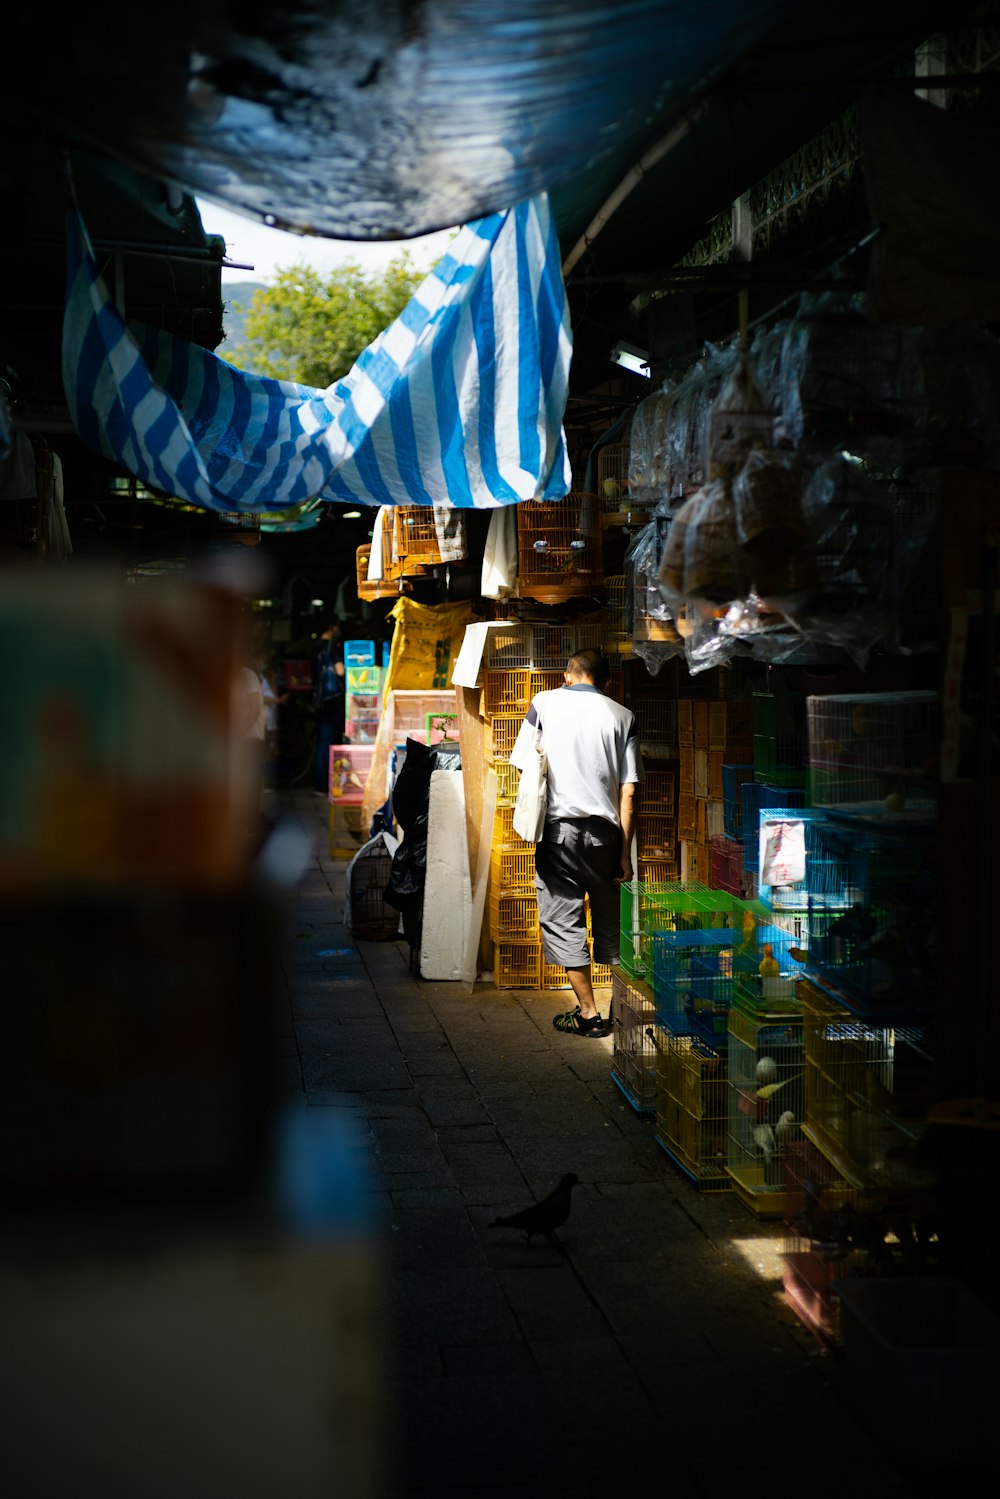 Un hombre está parado en un mercado con un paraguas de rayas azules y blancas